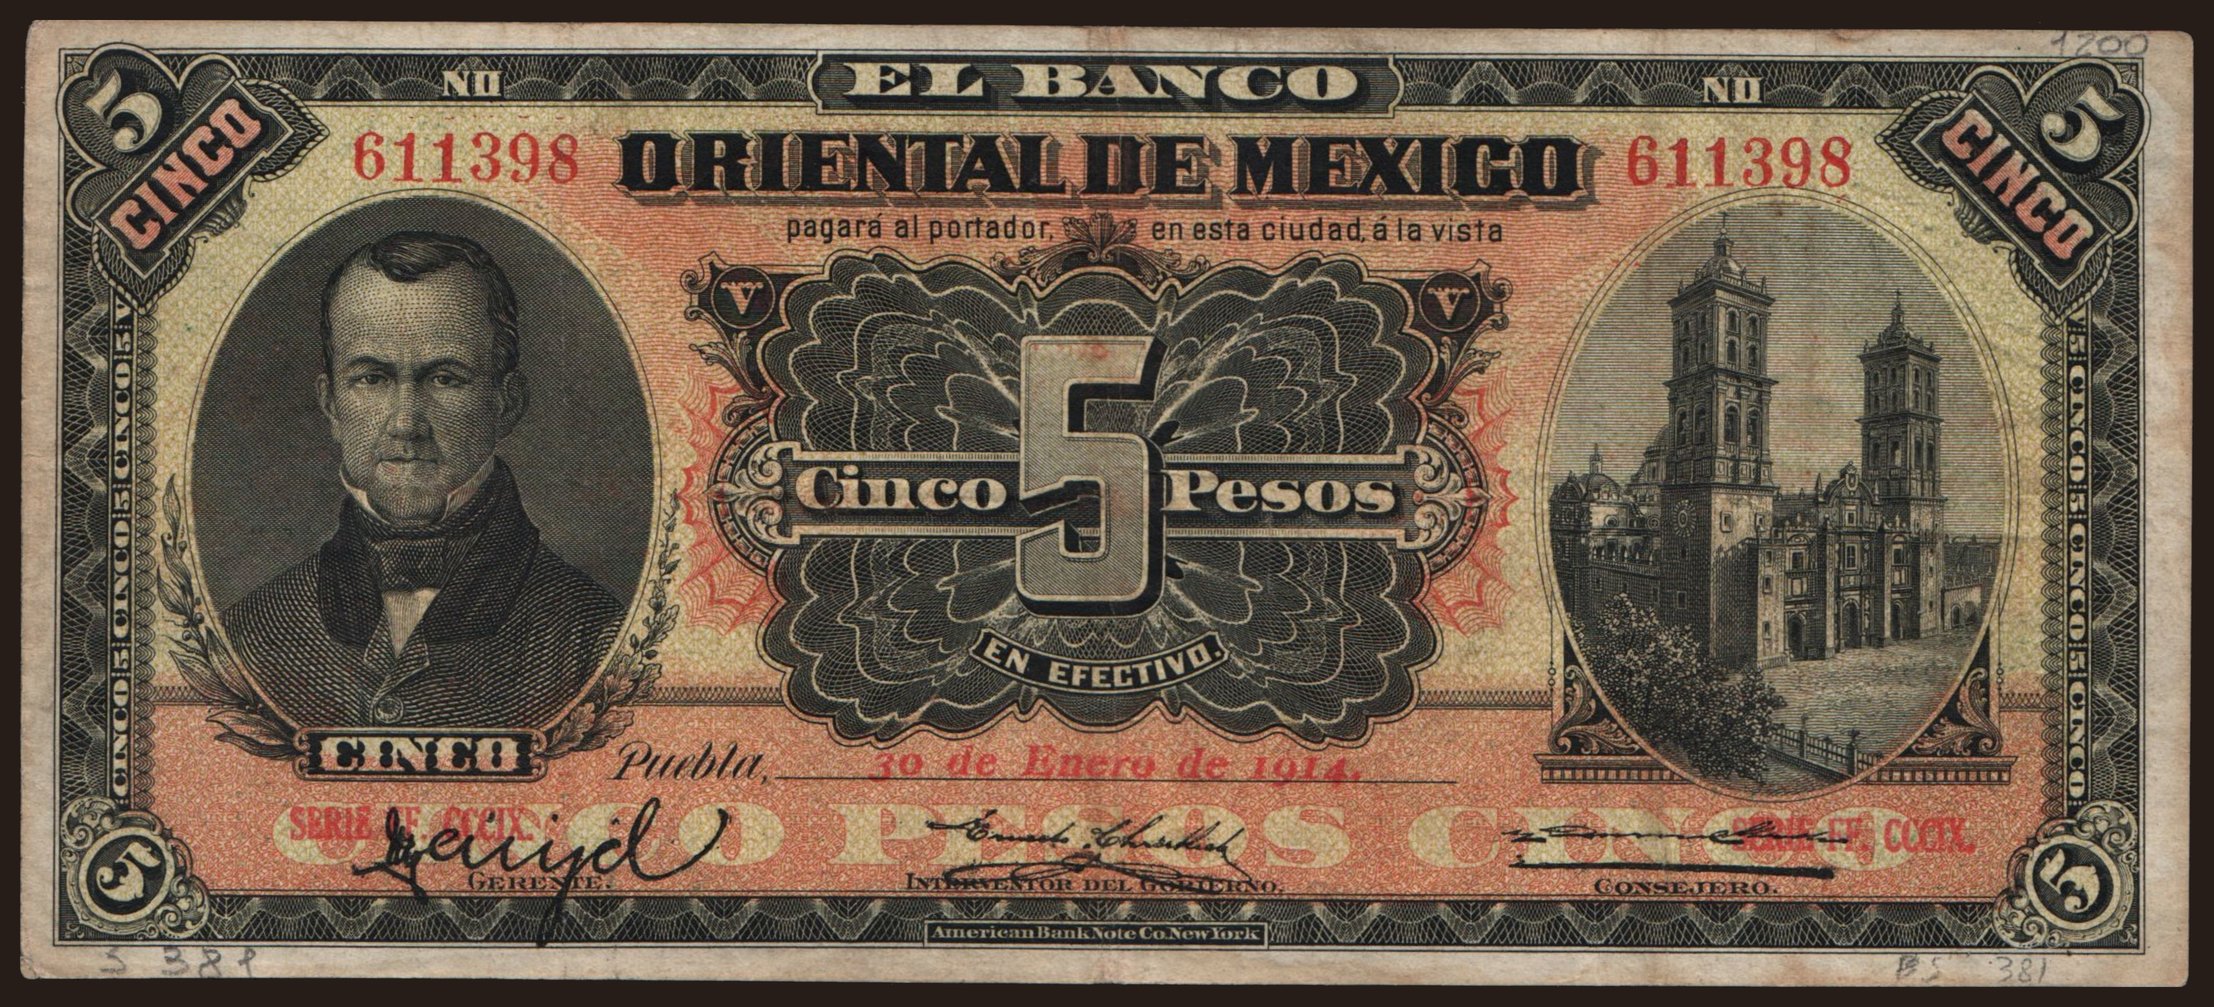 El Banco Oriental de Mexico, 5 pesos, 1914